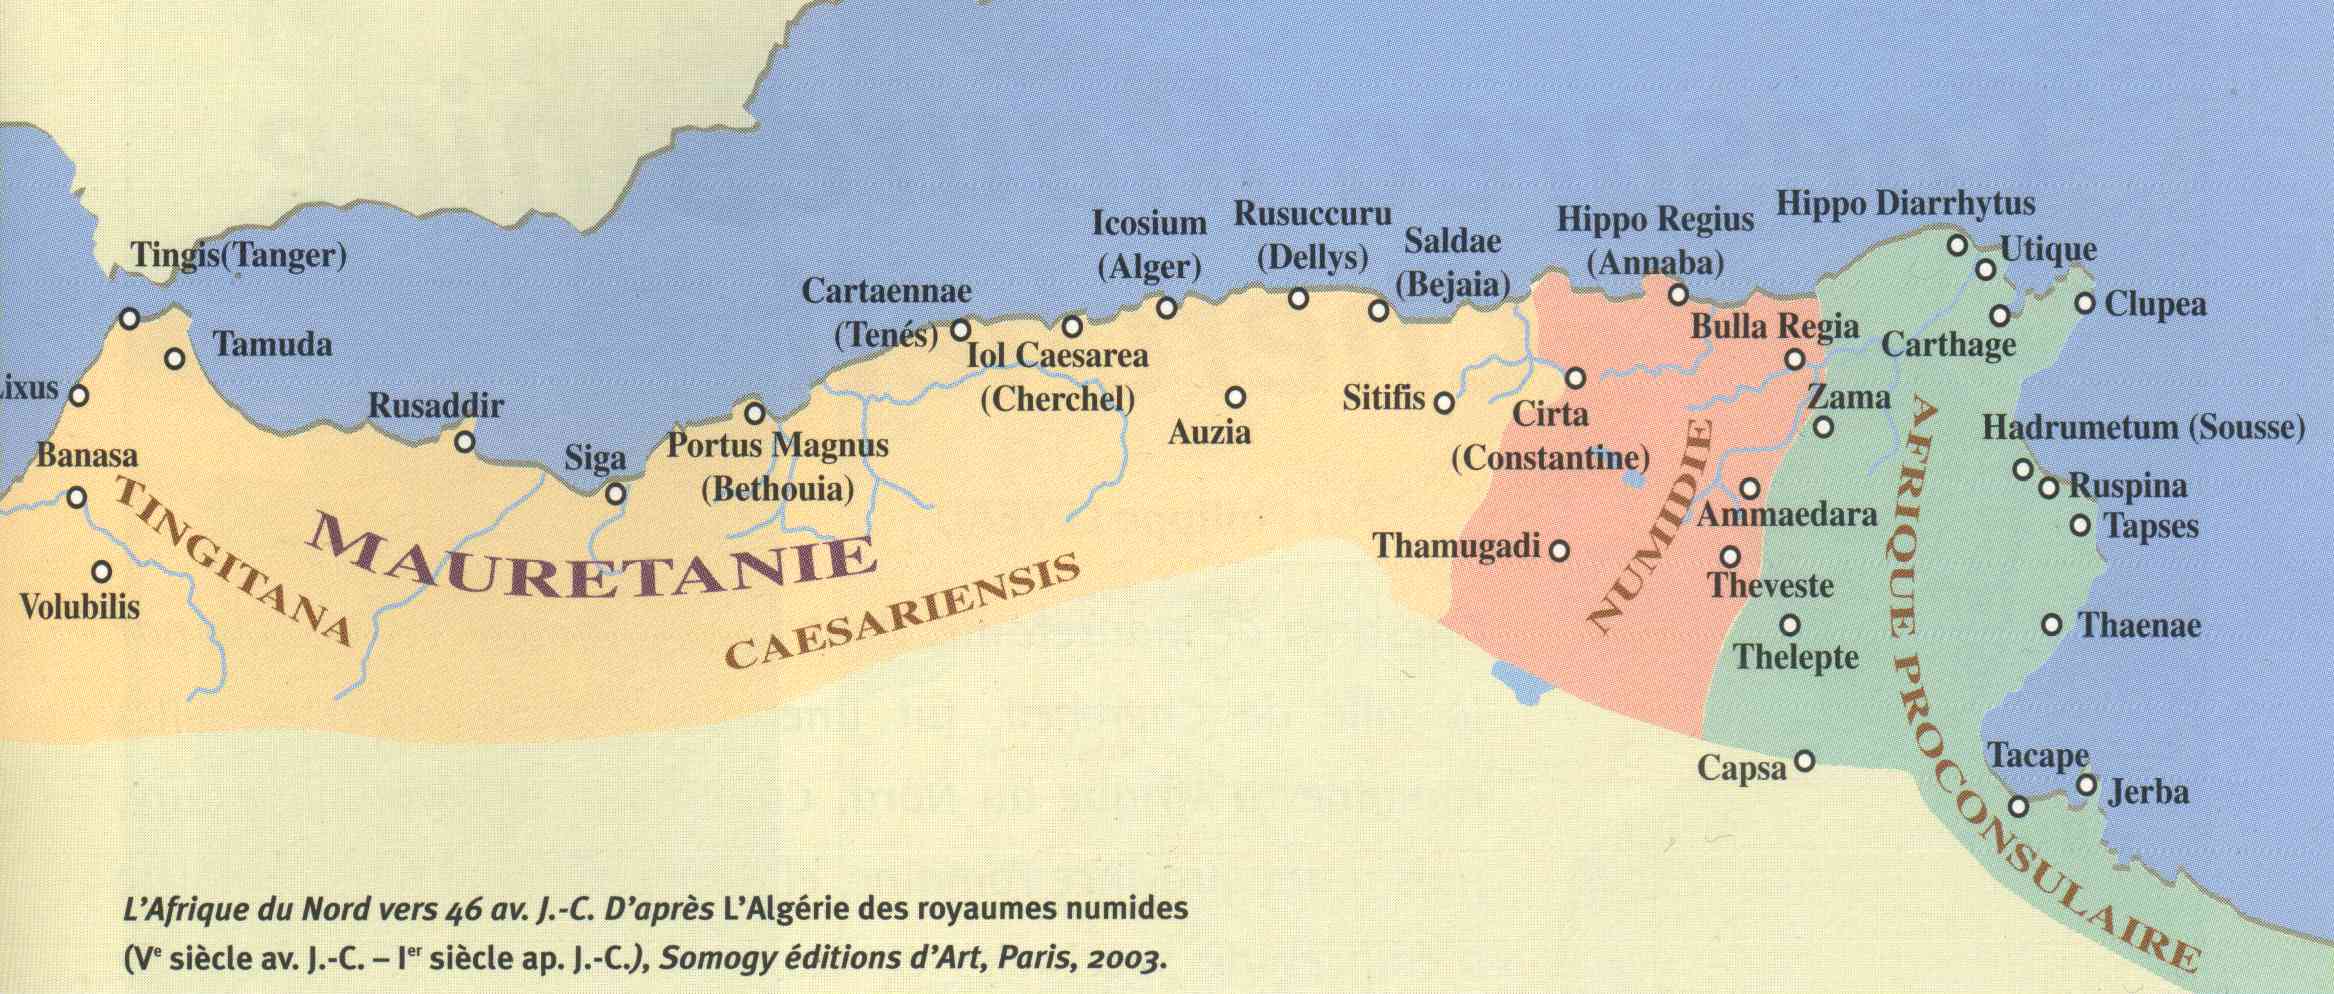 Carte des aires historiques de l'Afrique du Nord 